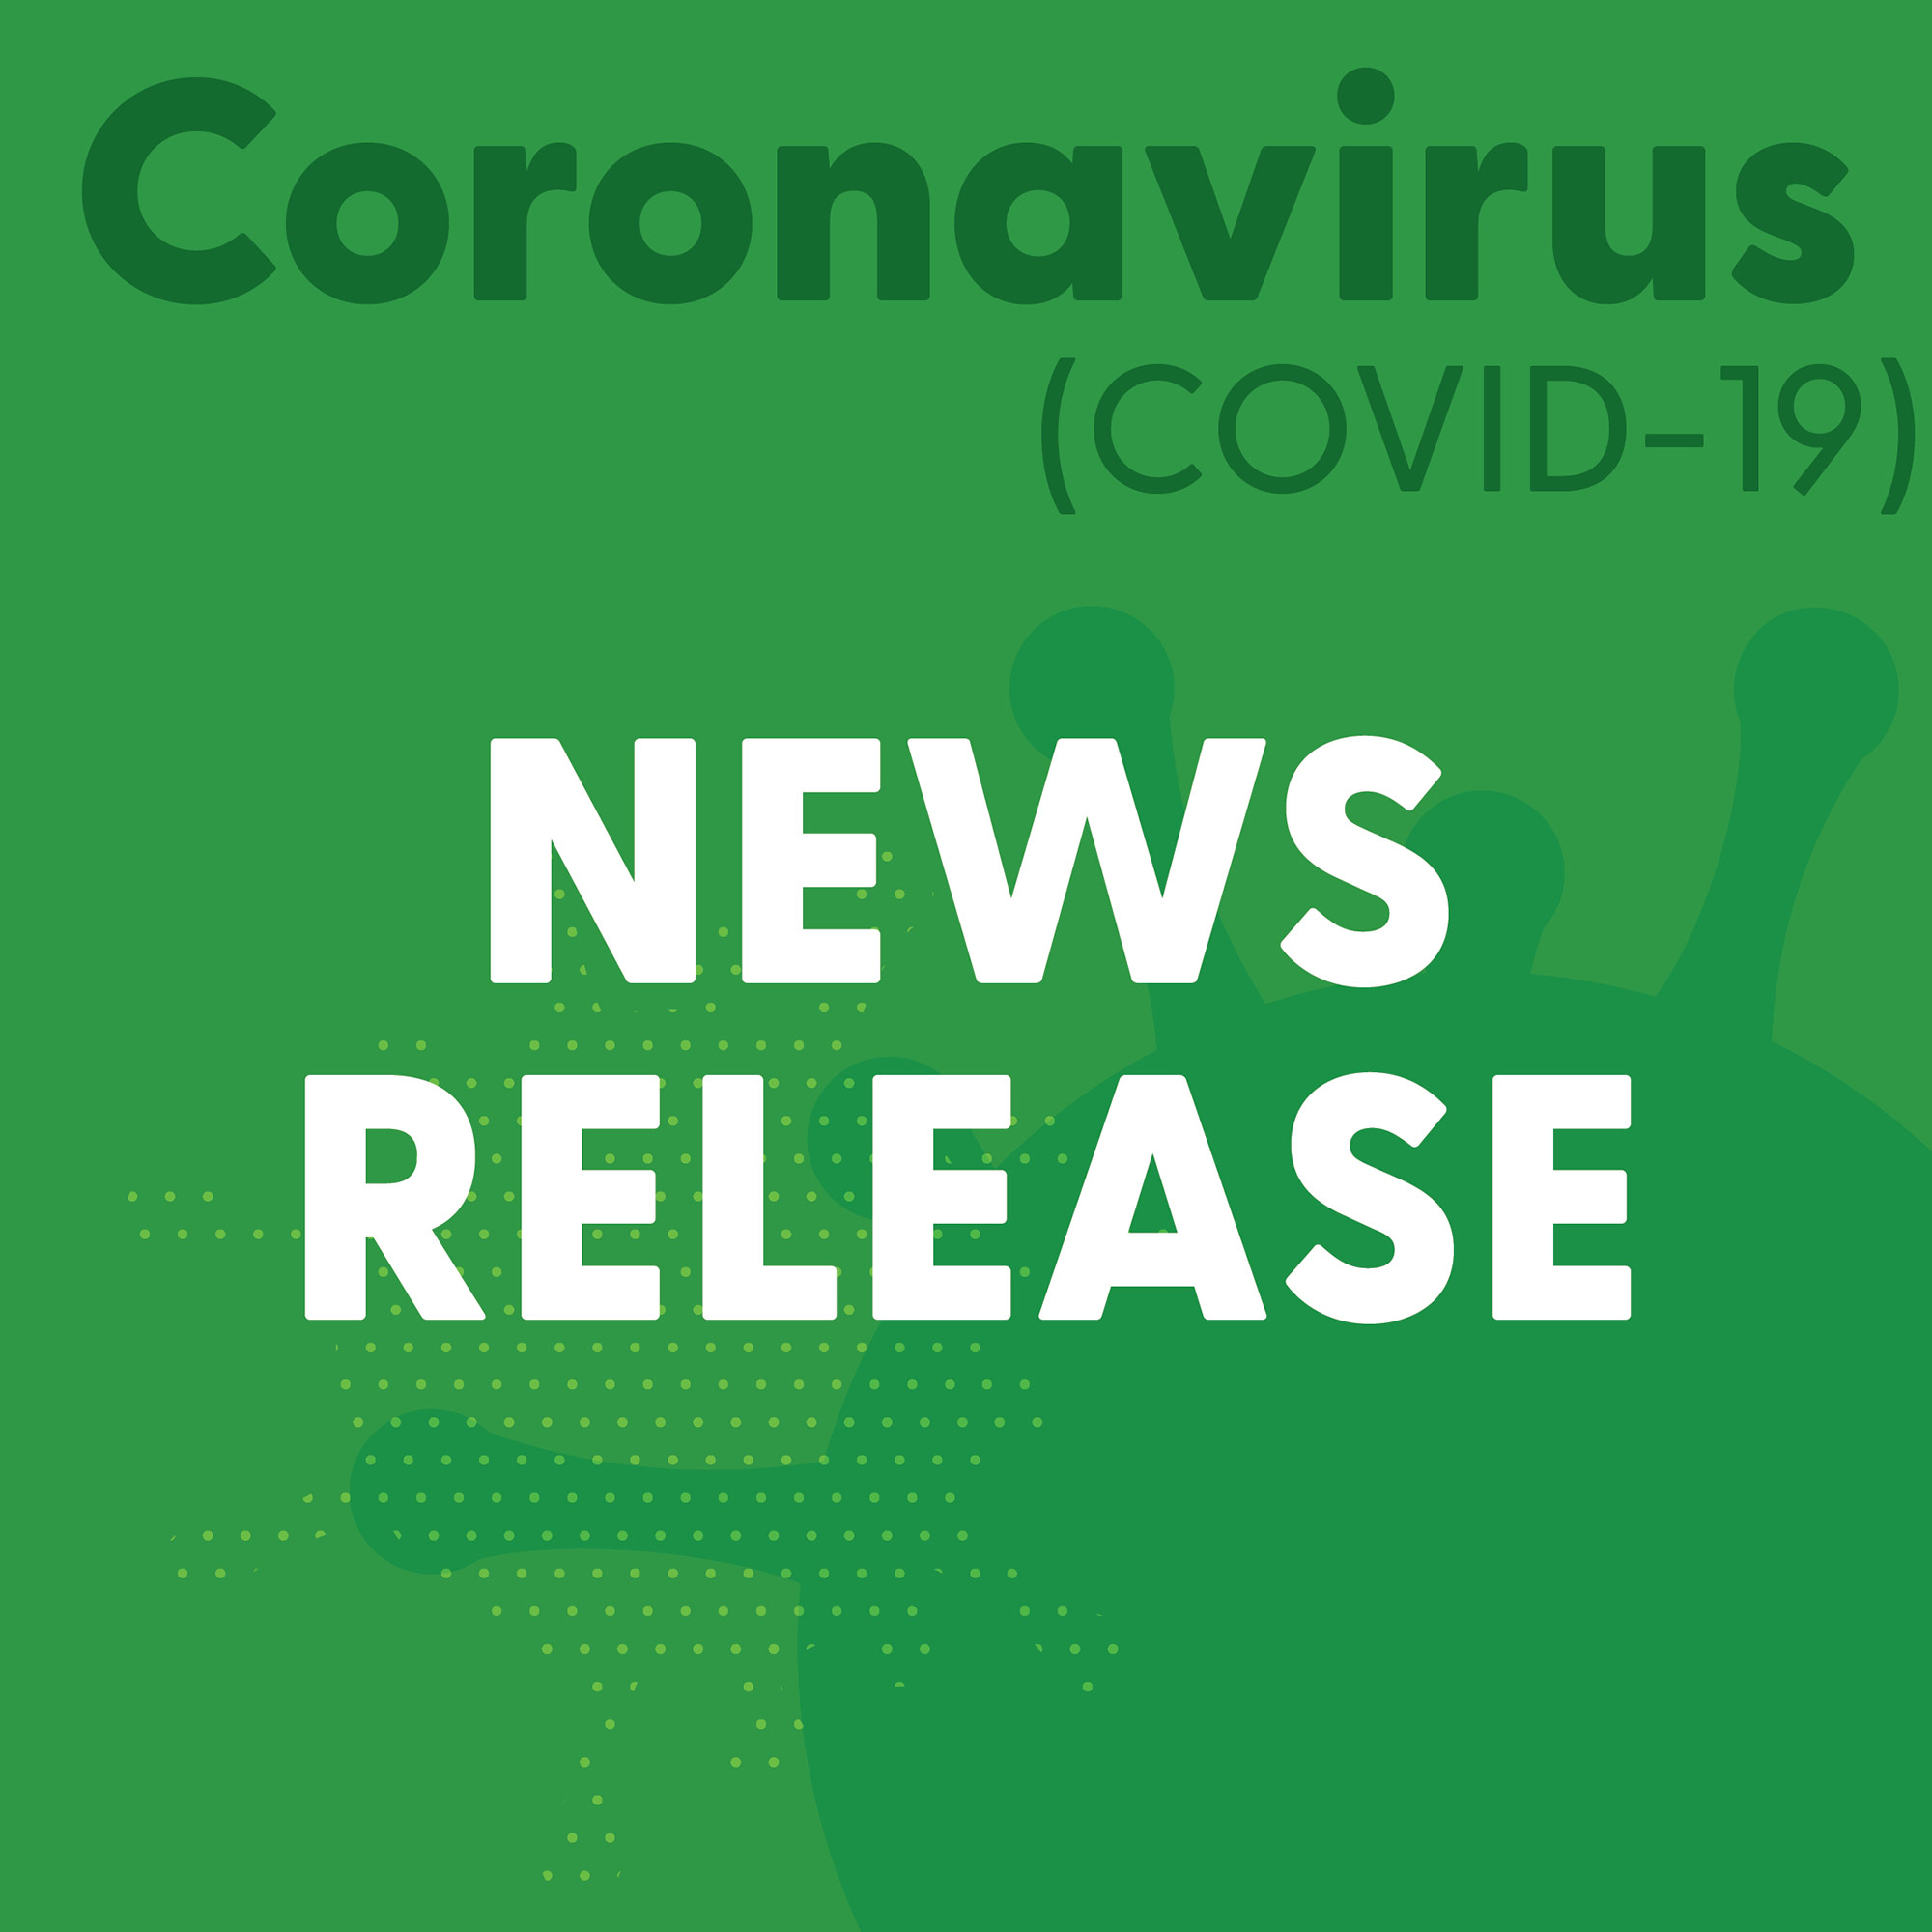 covid-19 news release